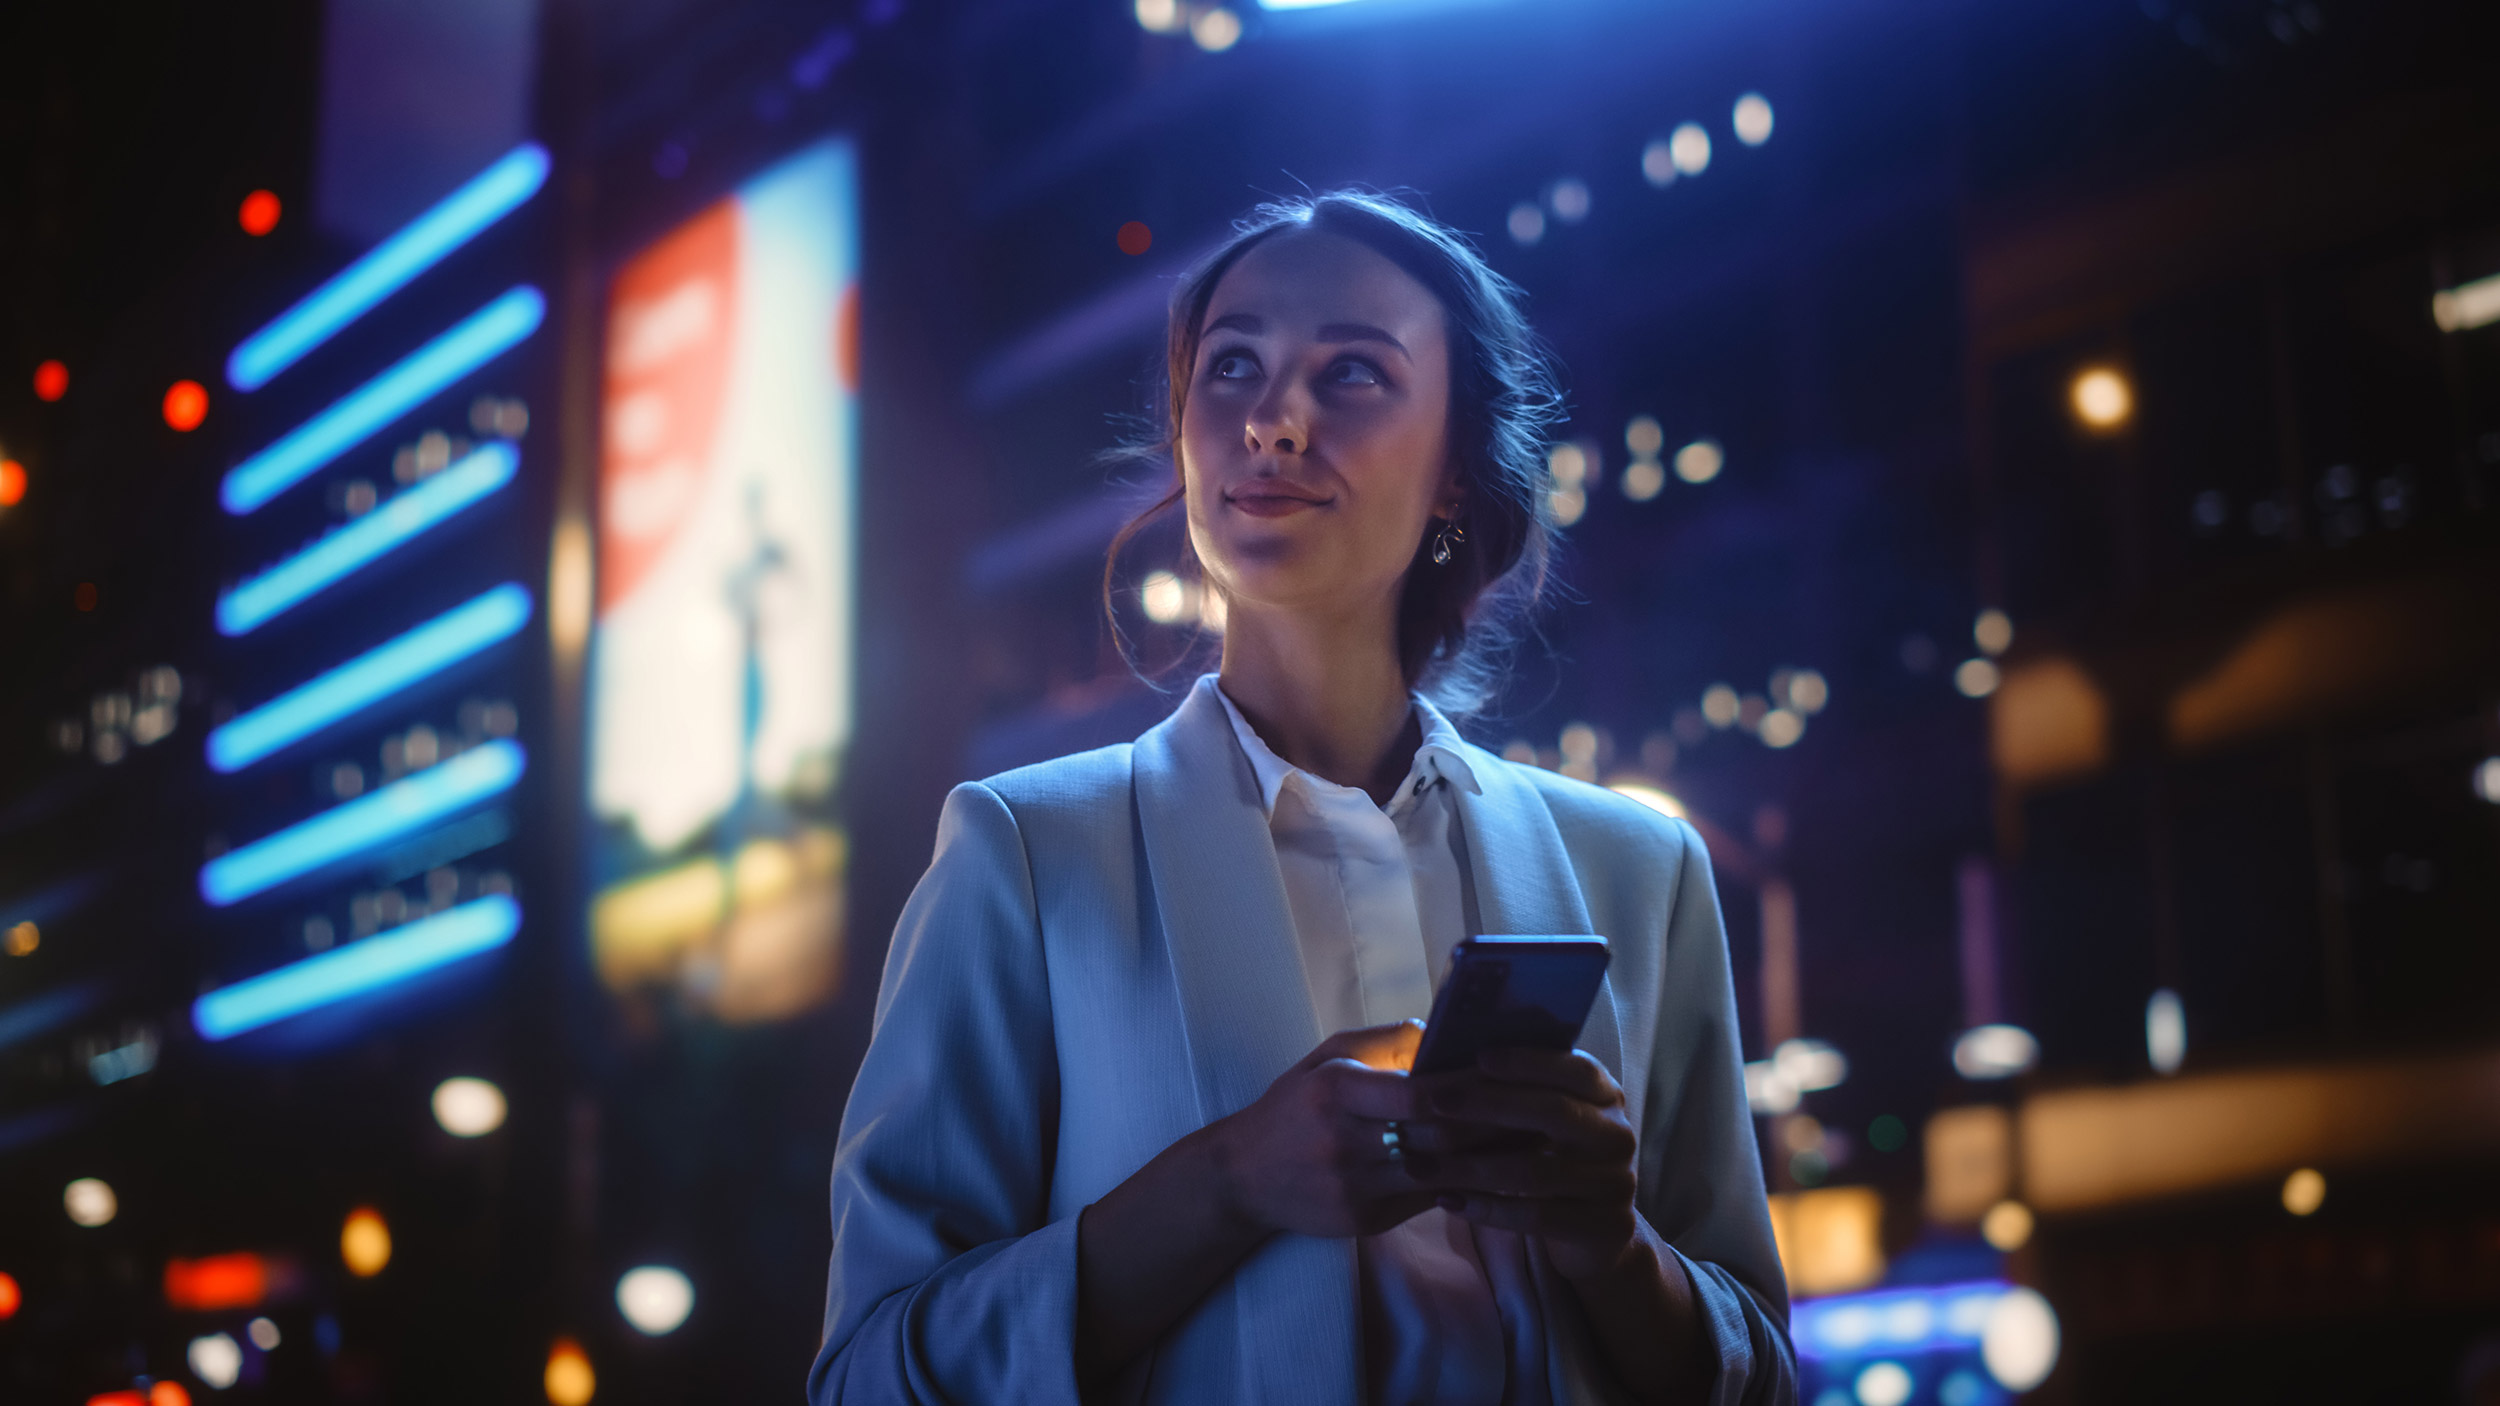 Frau in Businesskleidung die ein Mobiltelefon in der Hand hält in einer urbanen Umgebung mit stimmiger Beleuchtung